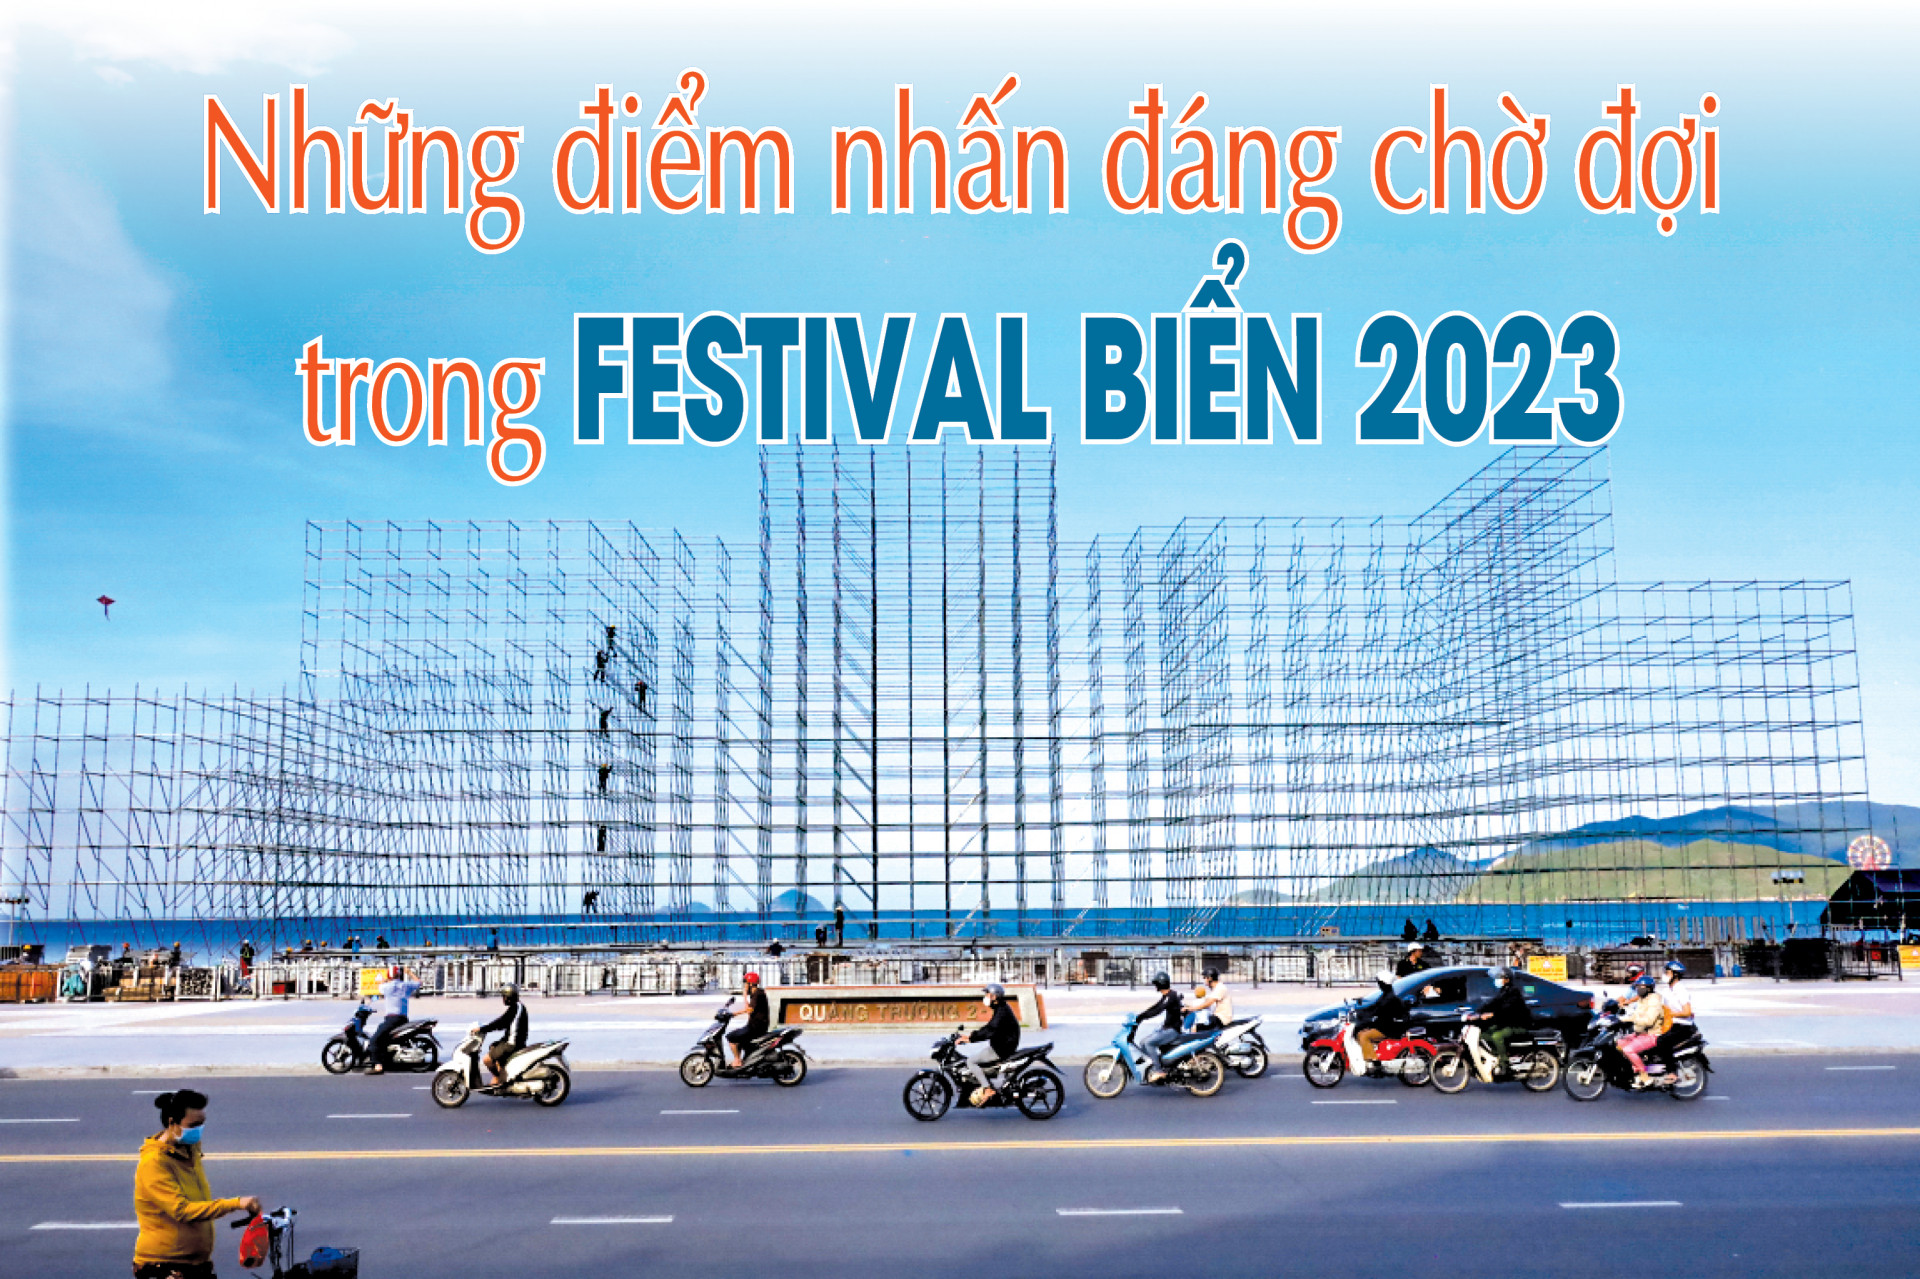 Những điểm nhấn đáng chờ đợi trong Festival Biển 2023